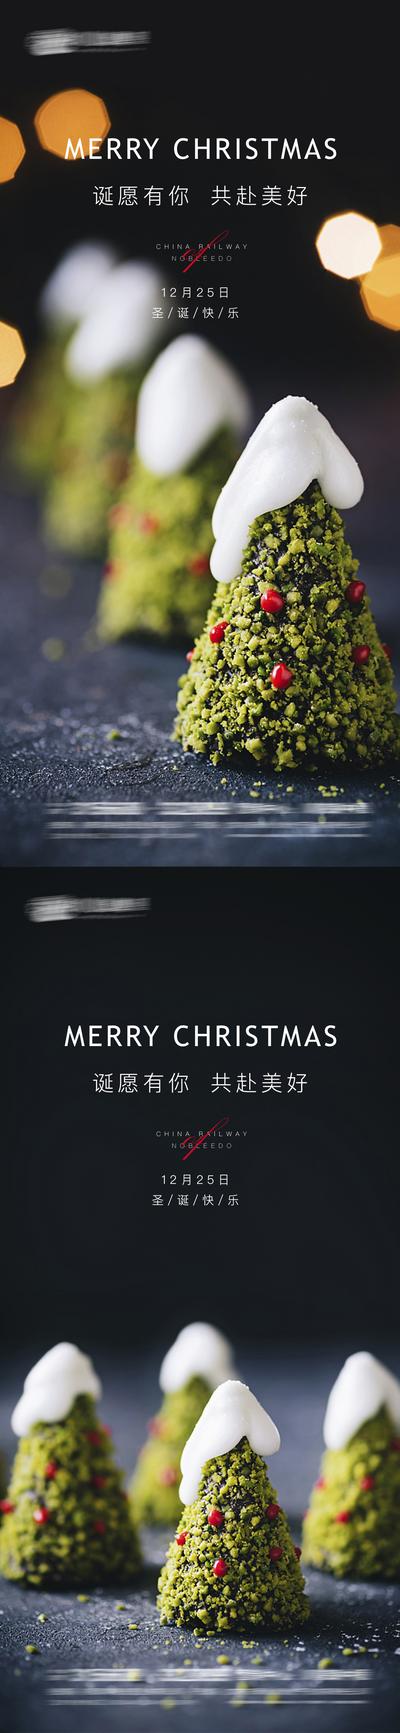 南门网 海报 公历节日 圣诞节 圣诞树 甜品